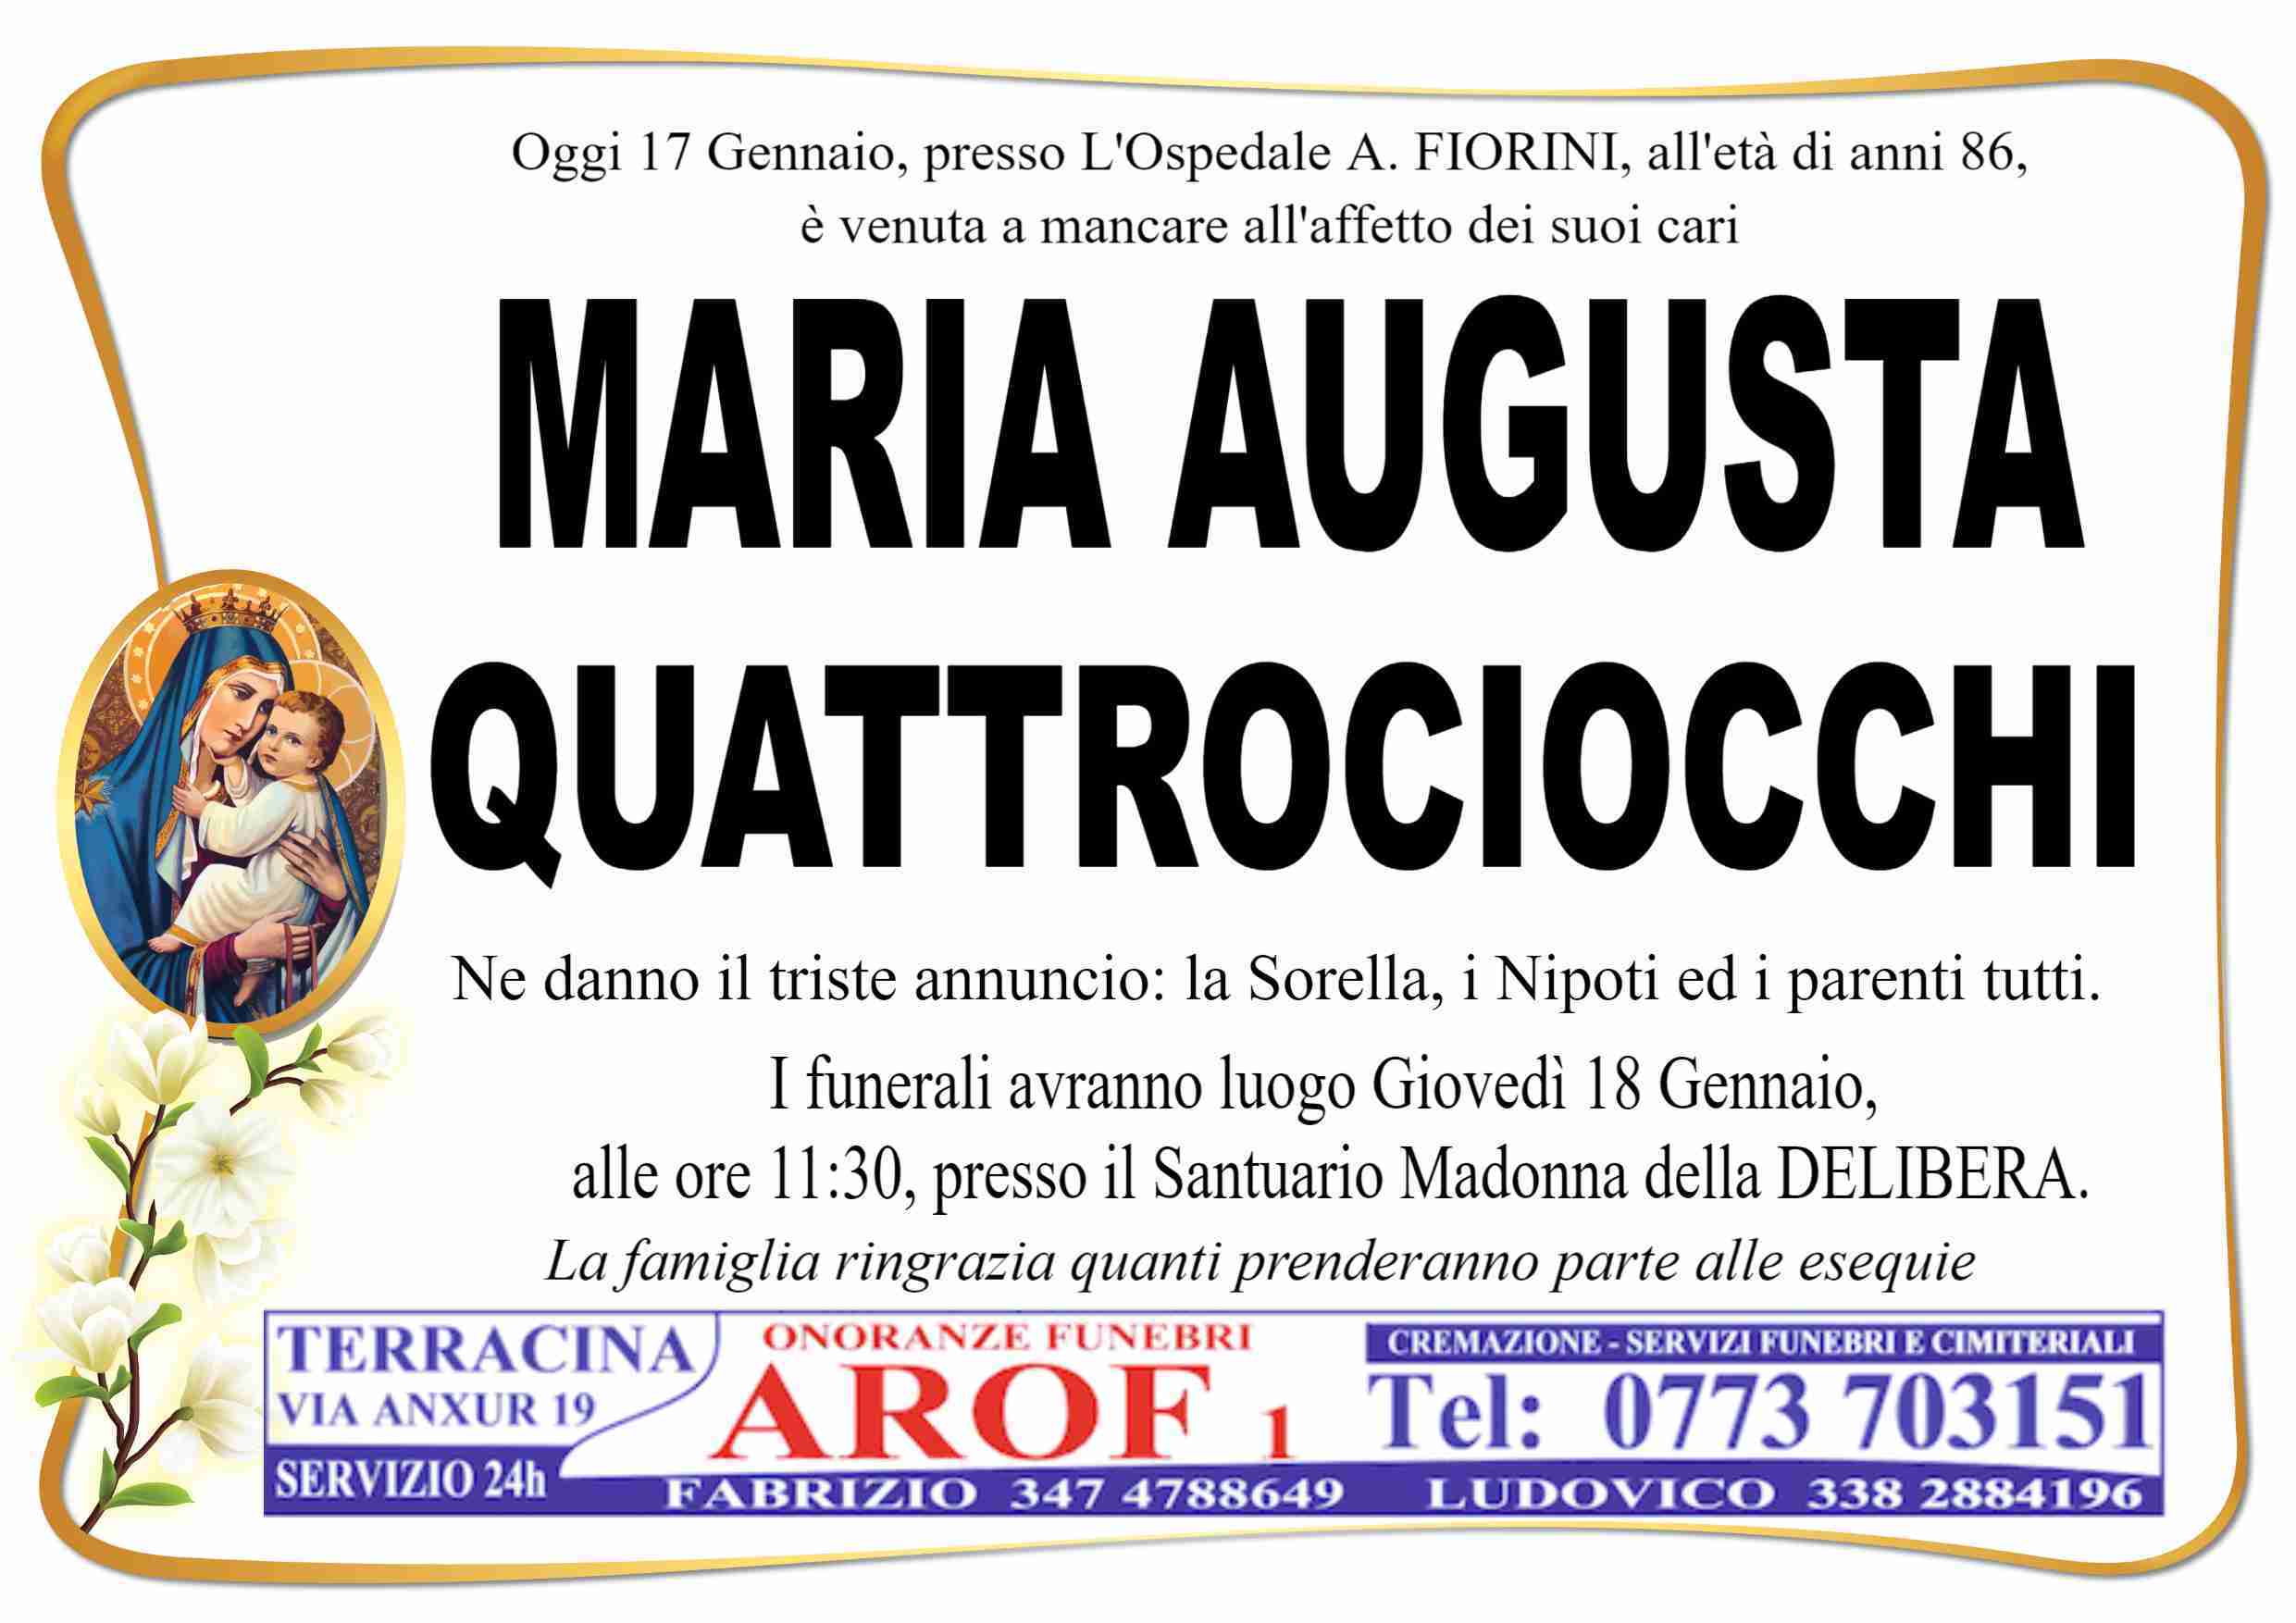 Maria Augusta Quattrociocchi